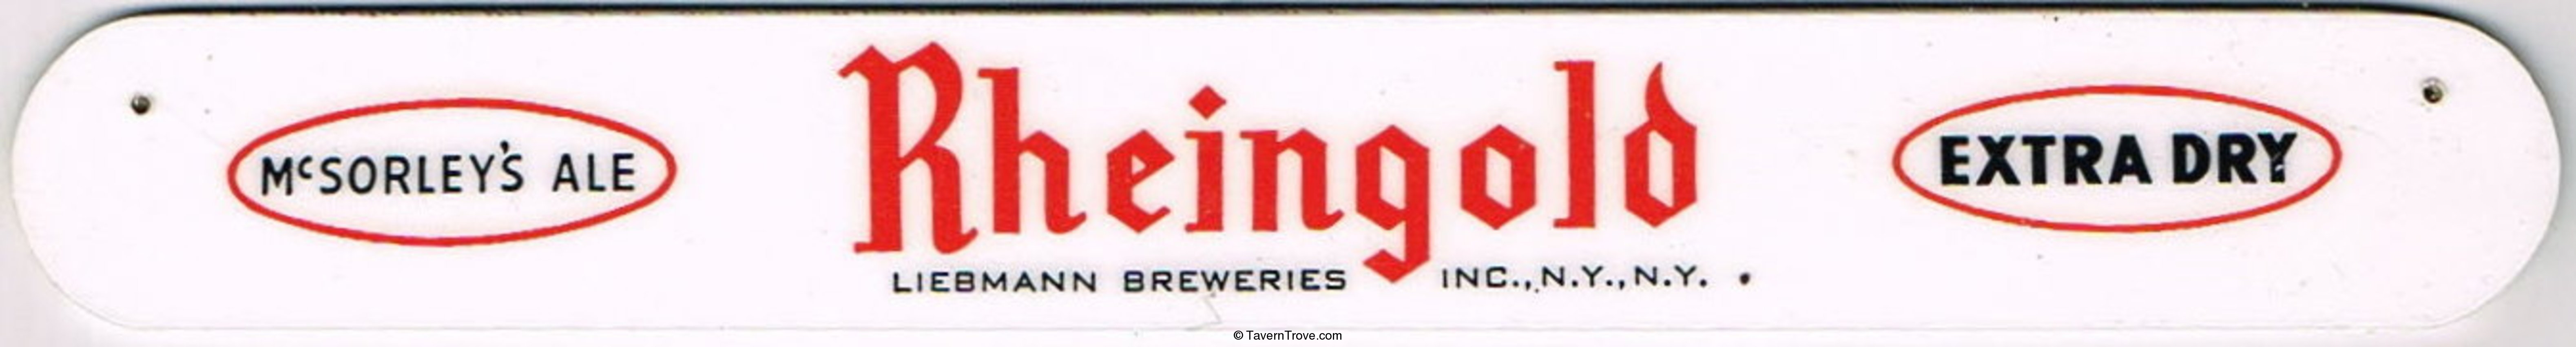 Rheingold Beer/McSorley's Ale